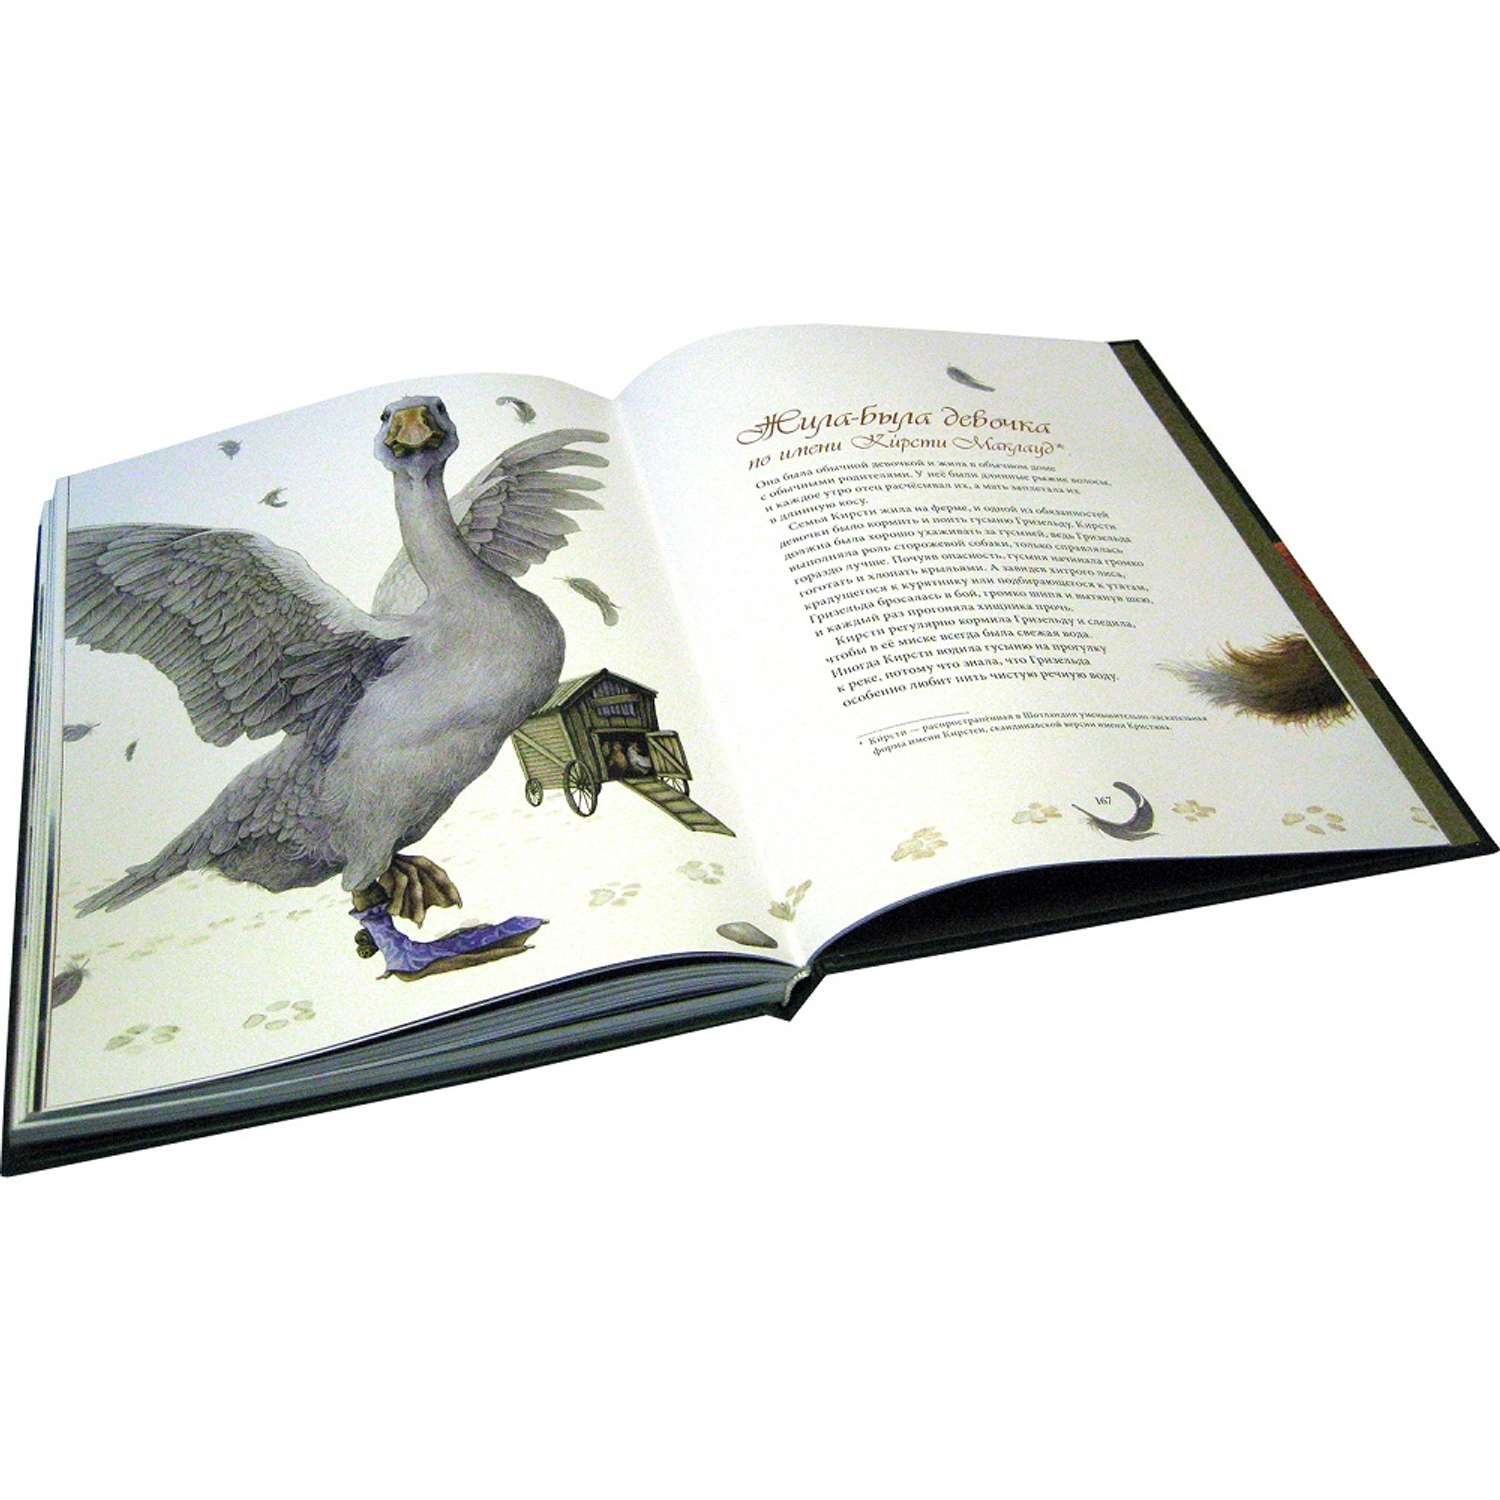 Бреслин Тереза Добрая книга Сказочные существа Шотландии Книга 2 иллюстратор Кейт Липер - фото 6